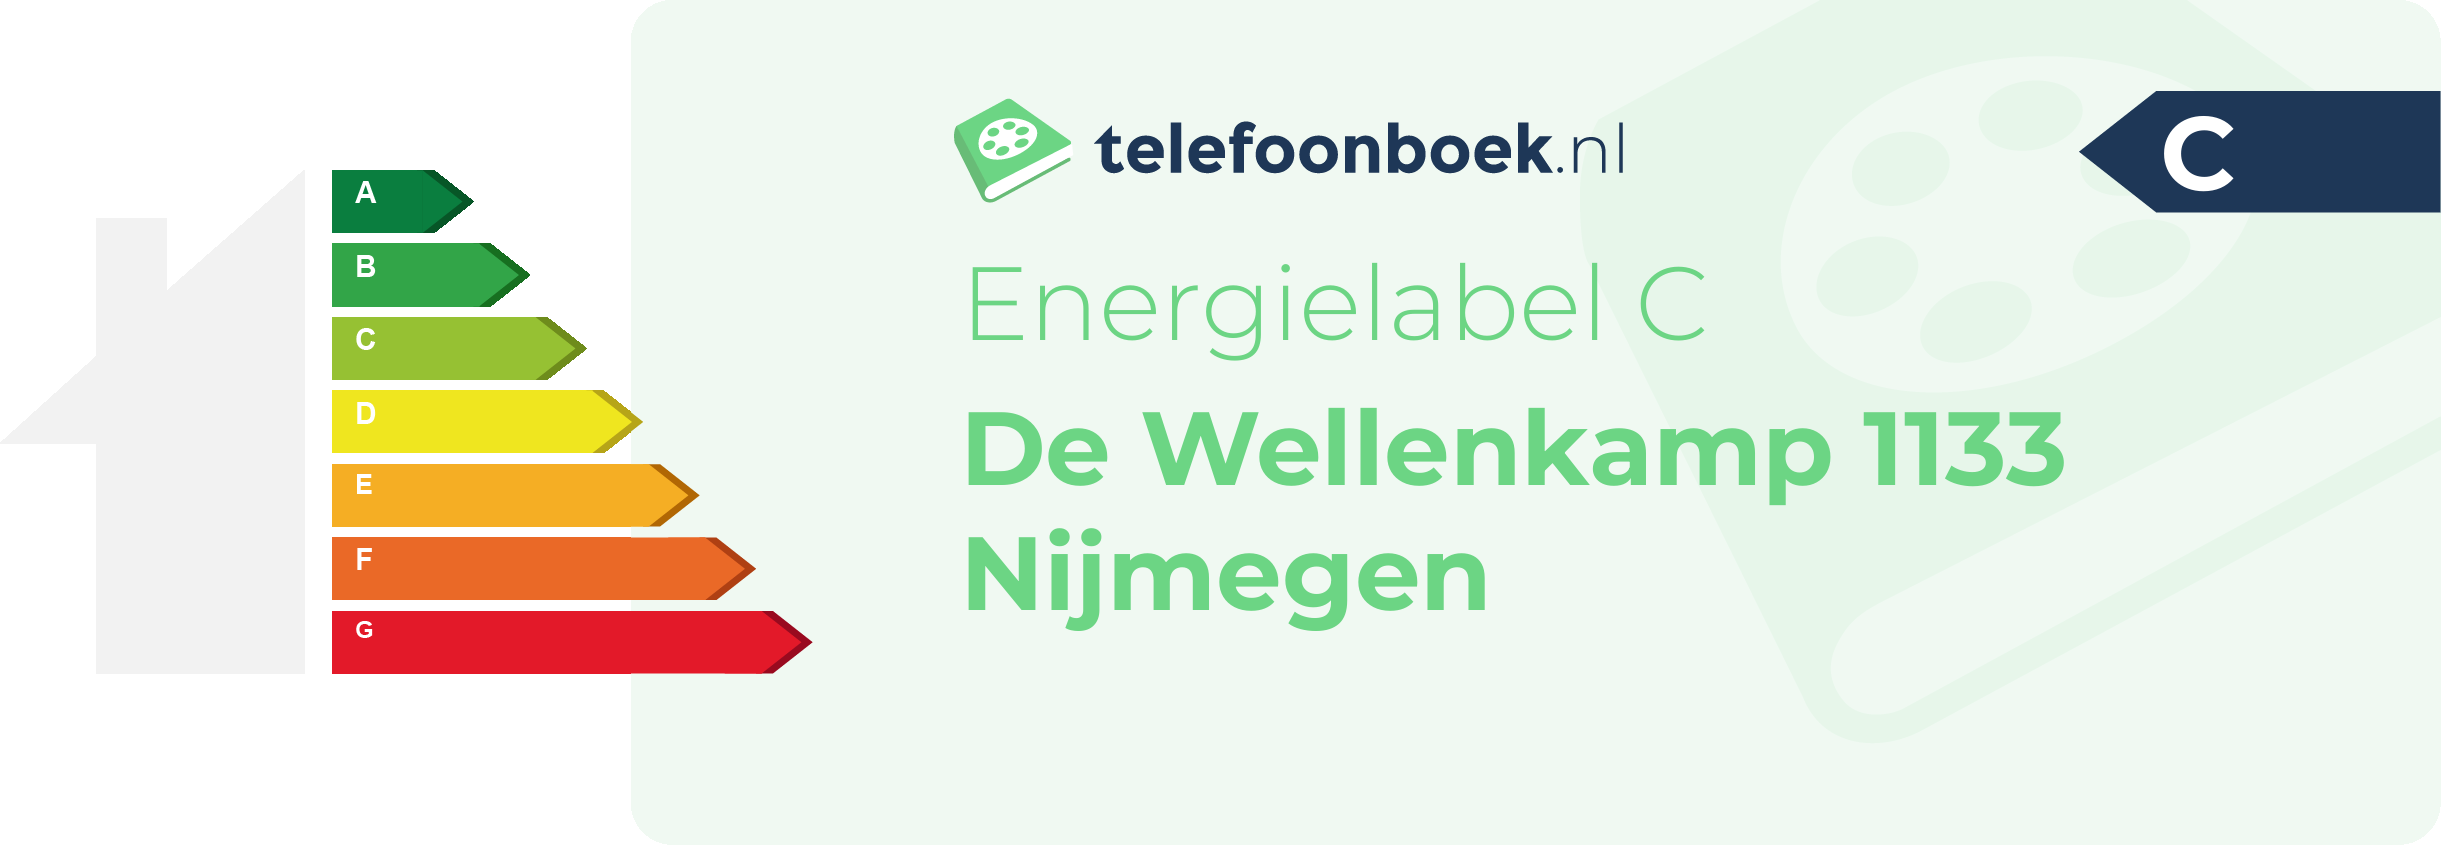 Energielabel De Wellenkamp 1133 Nijmegen